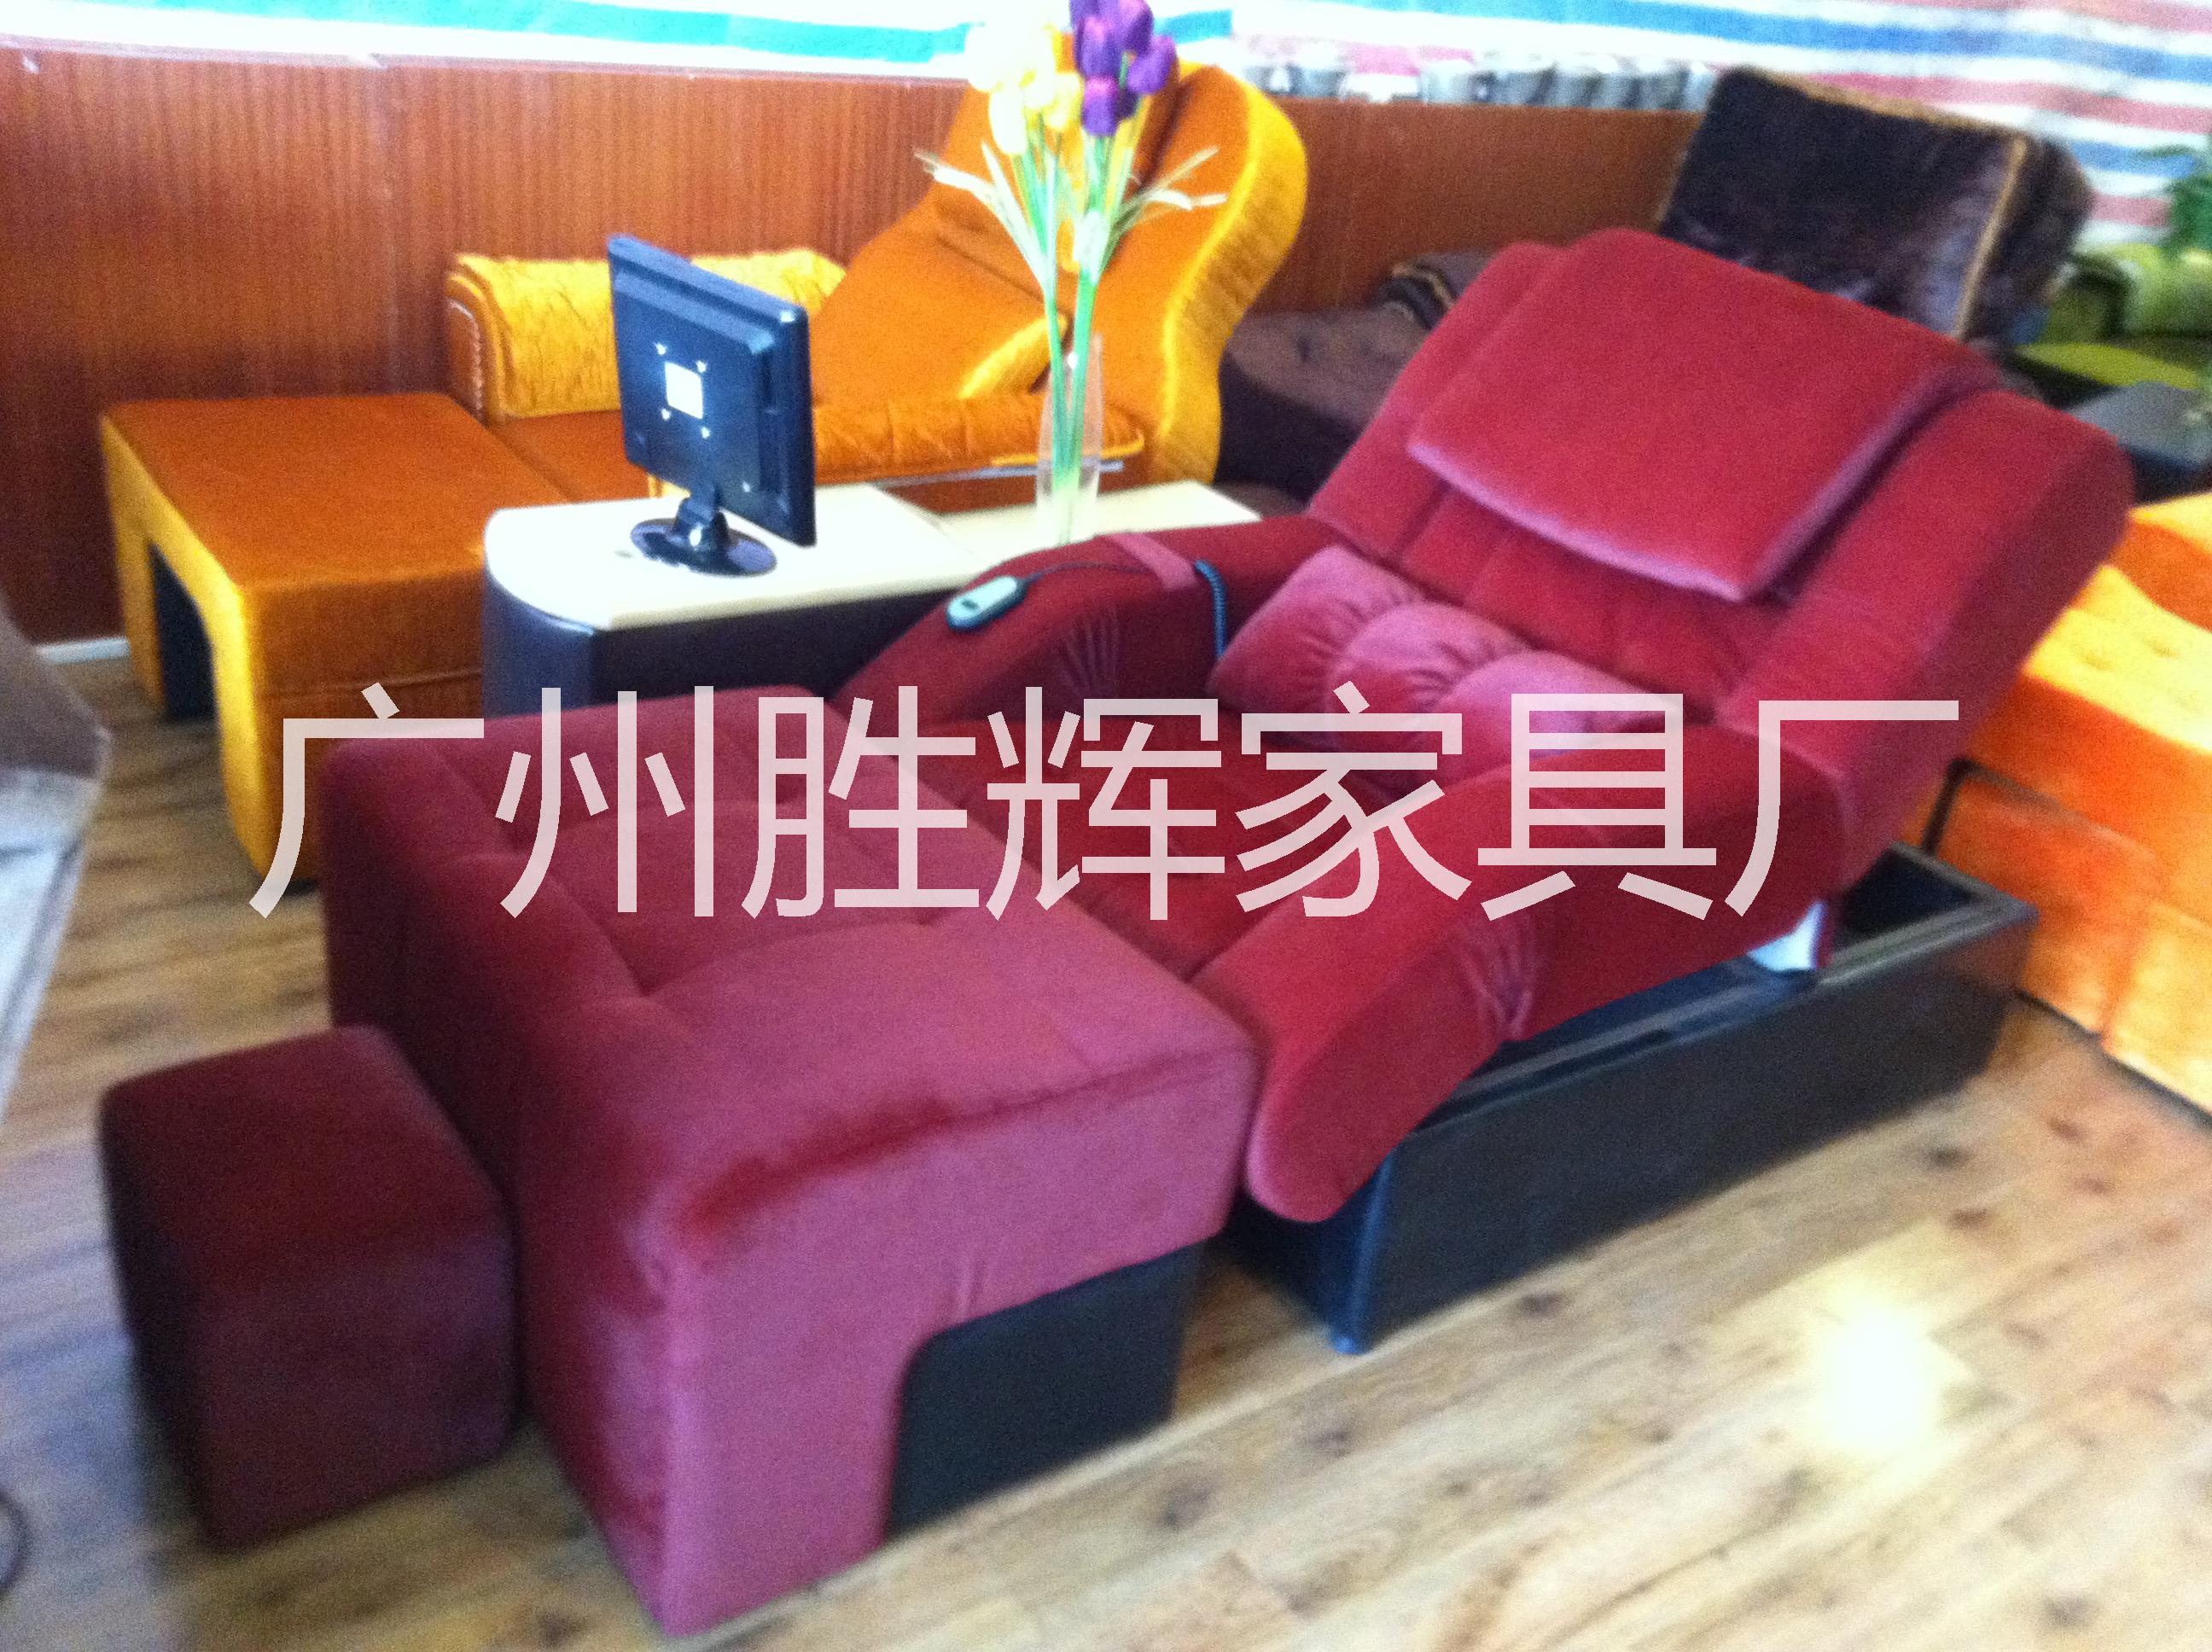 广州天河区沐足沙发公司/哪有沐足沙发定做图片